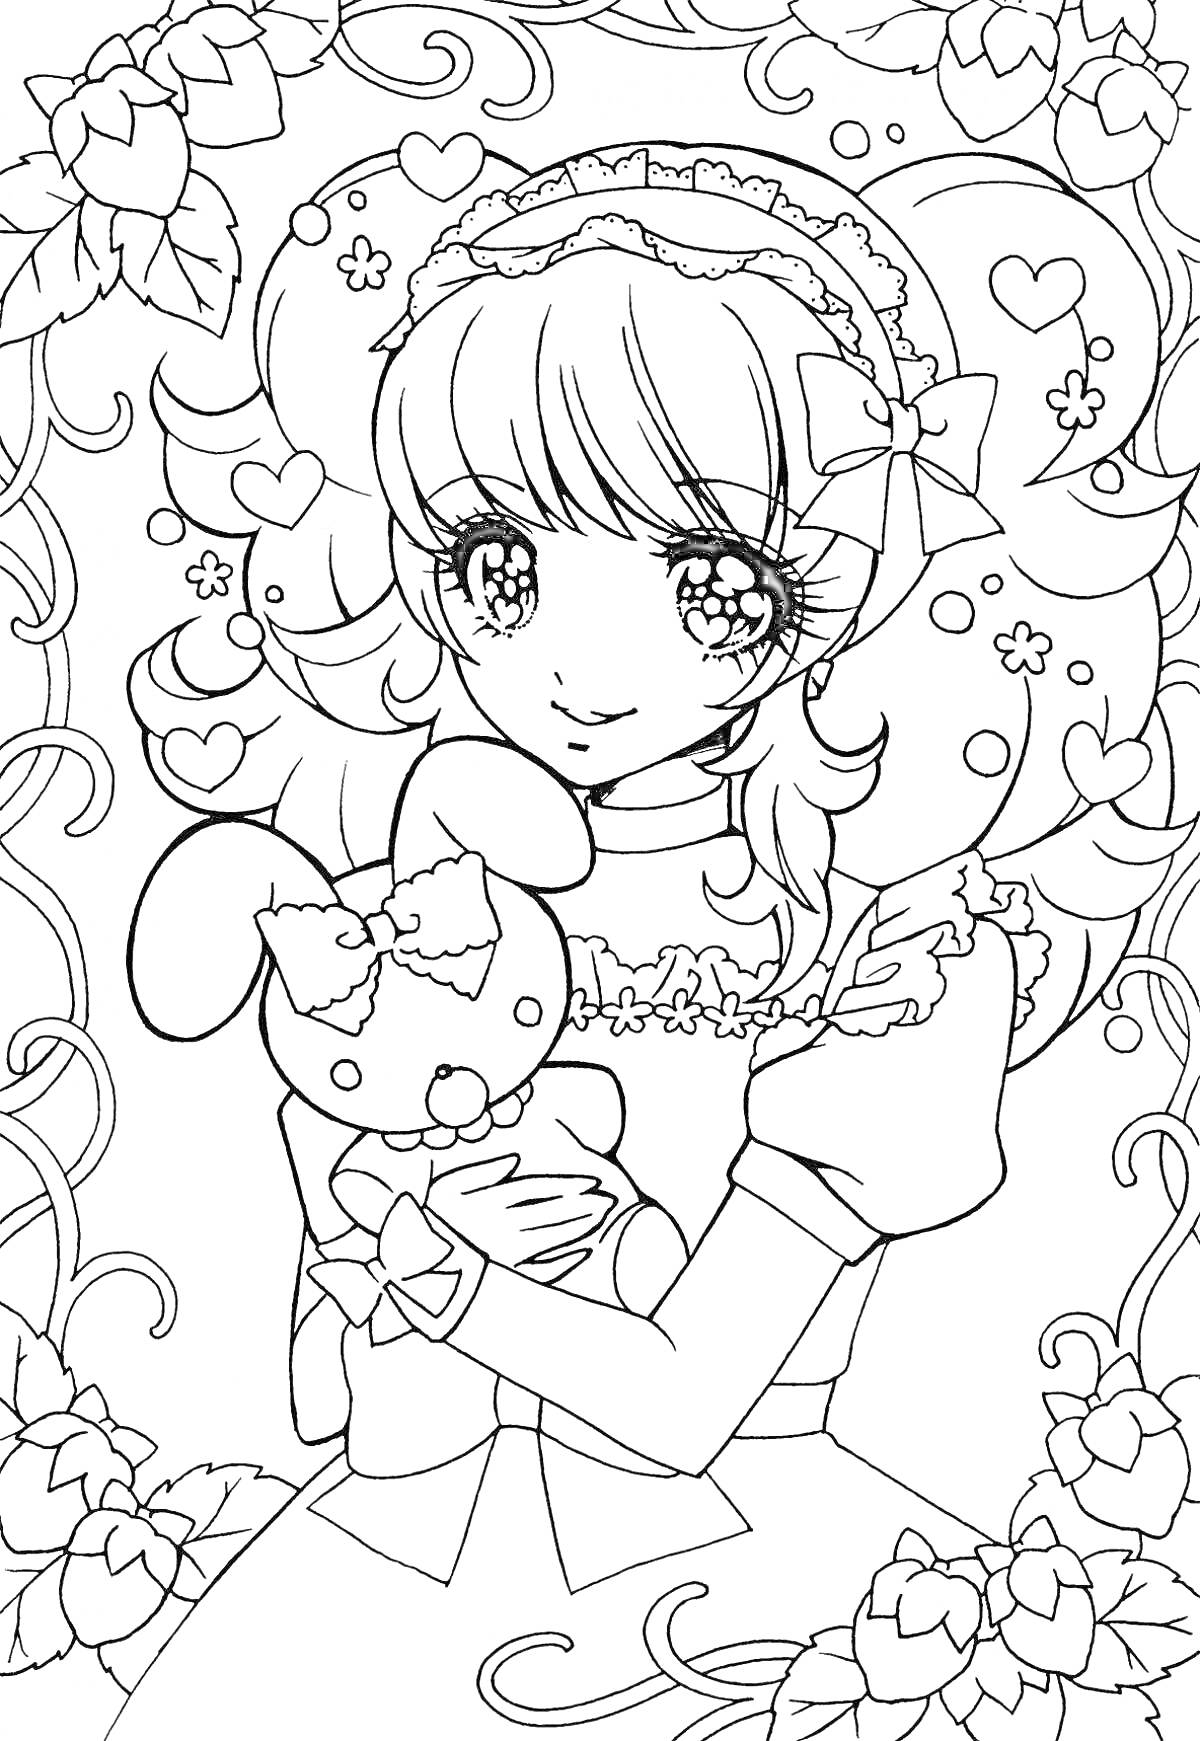 Раскраска Девочка с плюшевым зайчиком в рождественском наряде, окружённая завитками и сердечками с листьями падуба